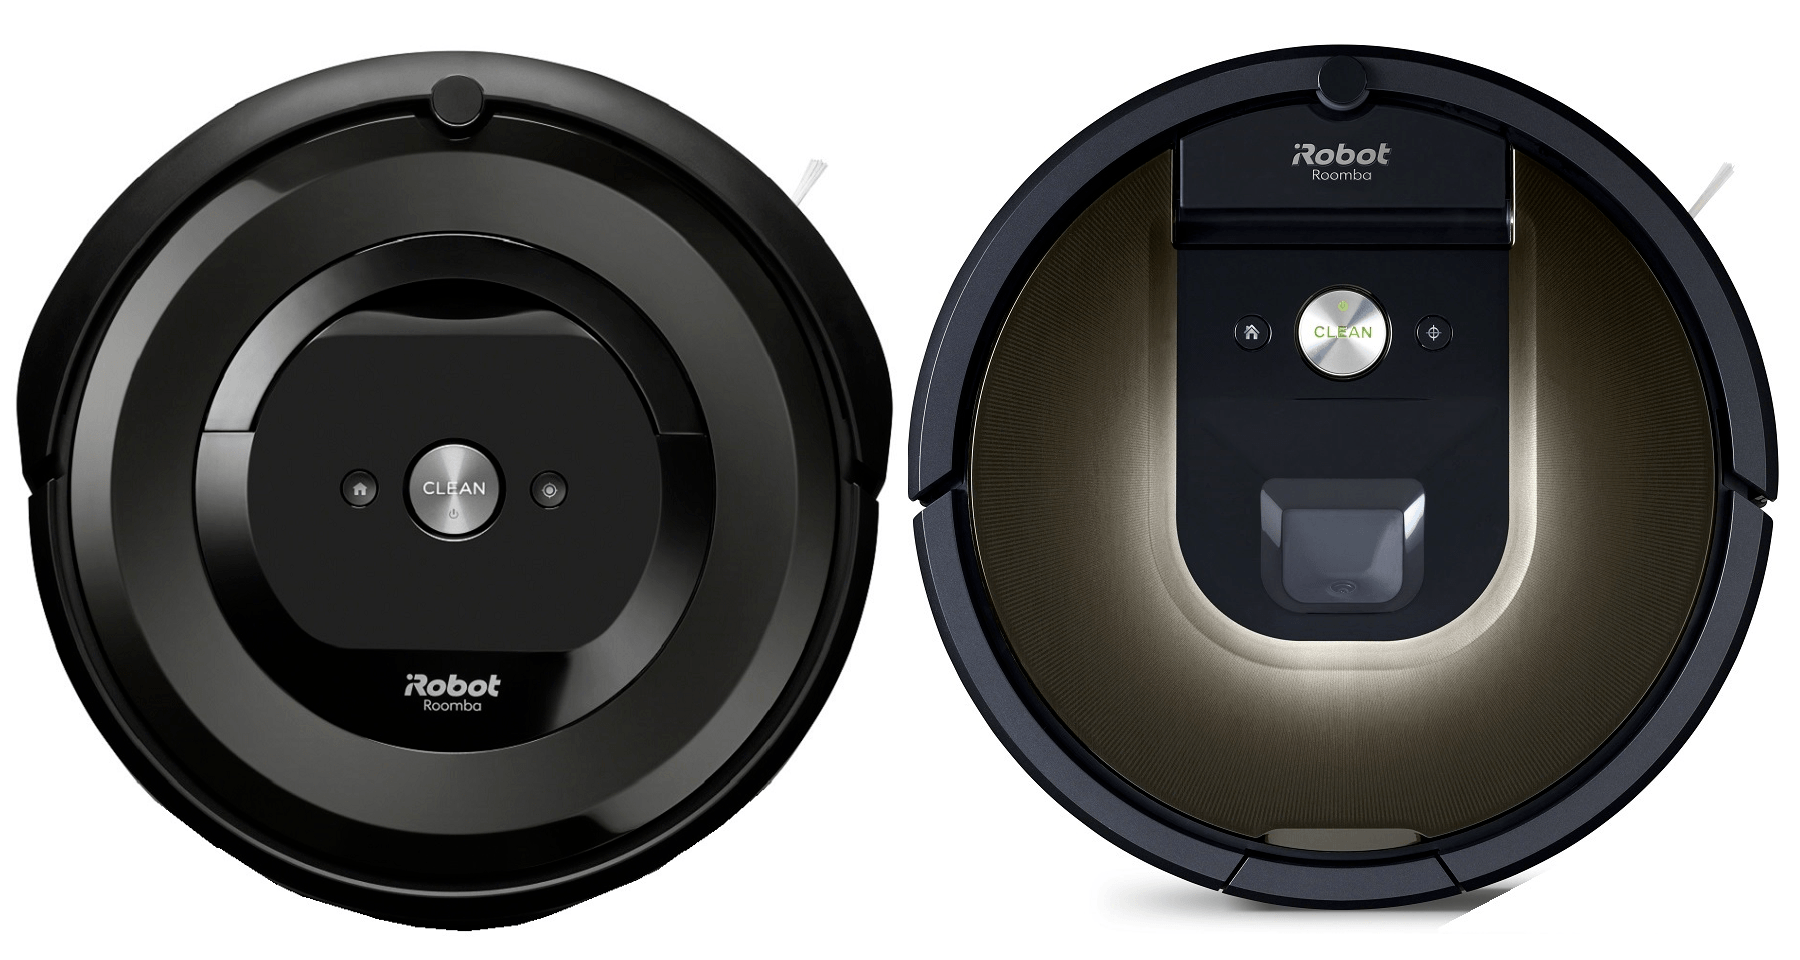 Roomba e5 Roomba - Let's Compare!